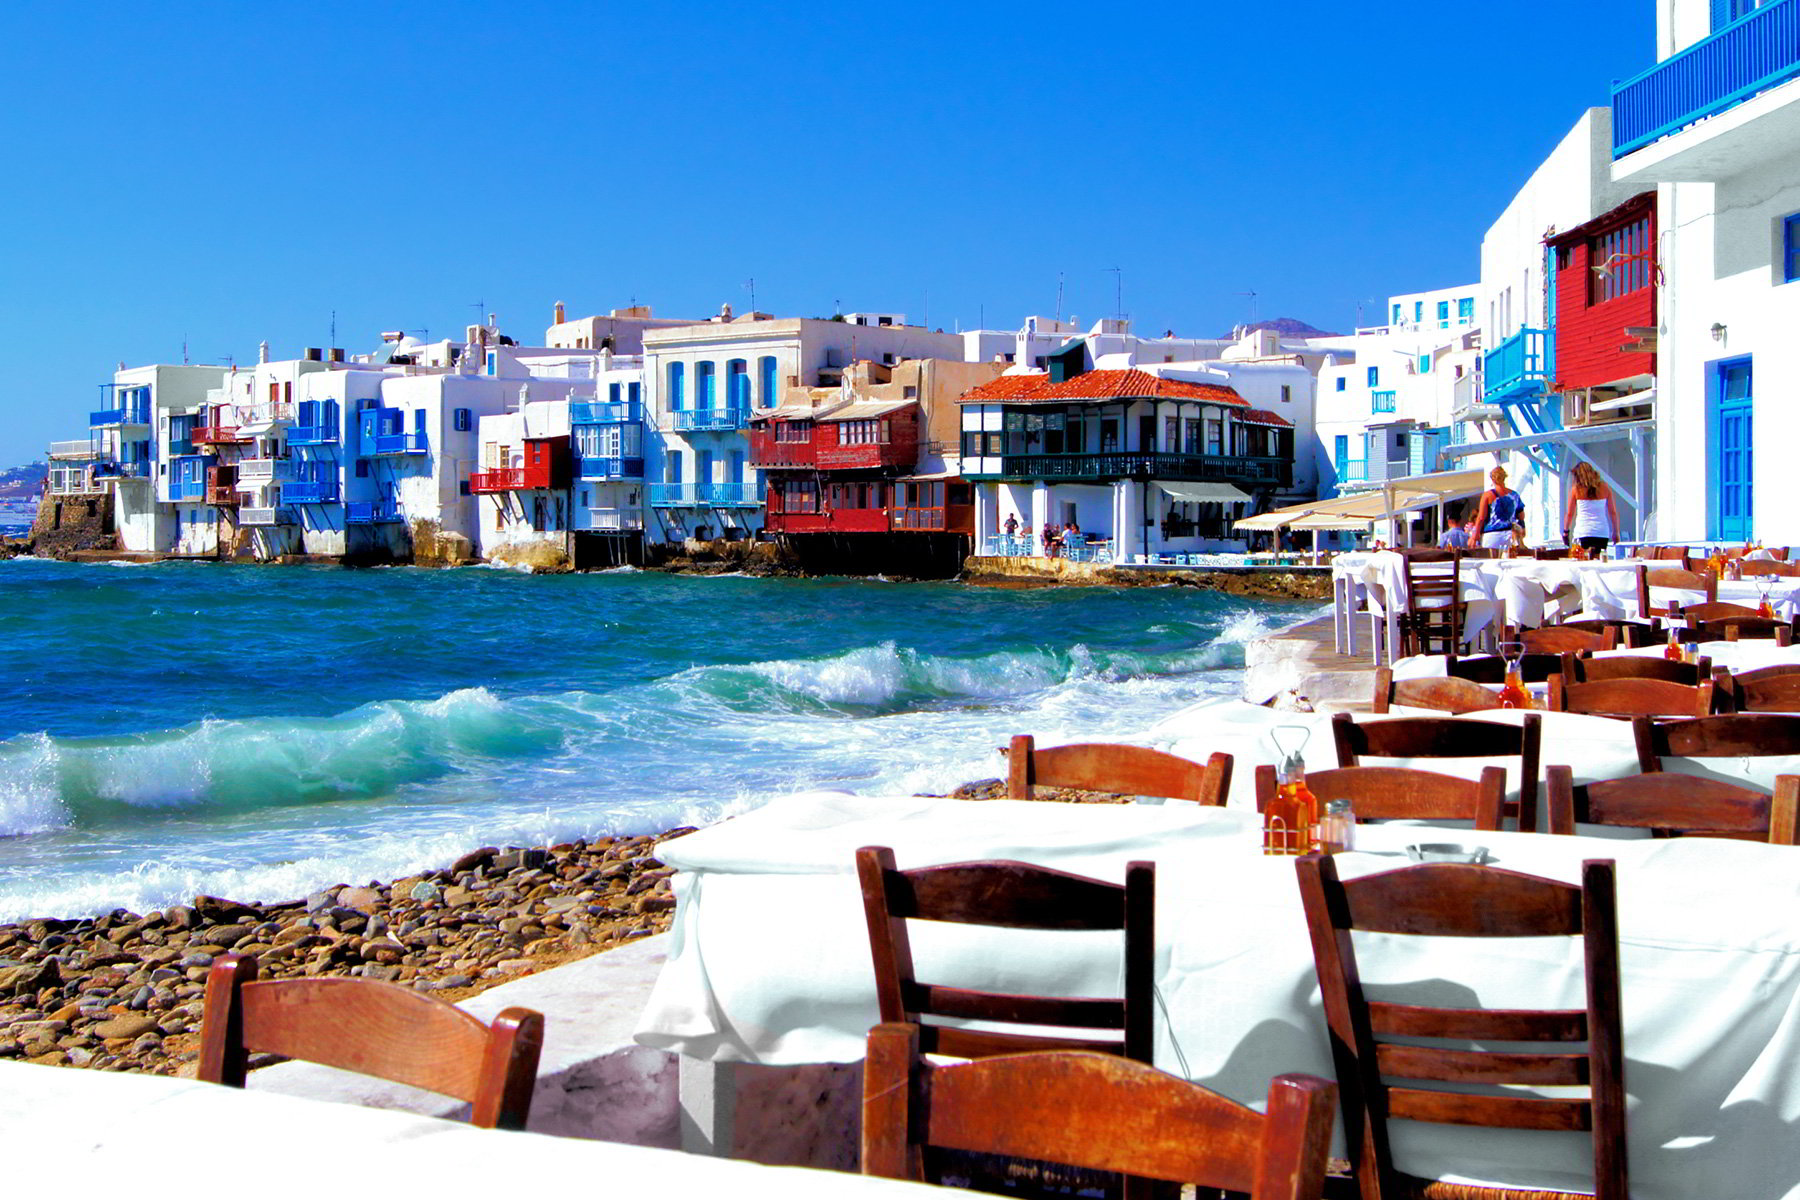 Δεύτερος δημοφιλέστερος προορισμός στις online αναζητήσεις η Ελλάδα